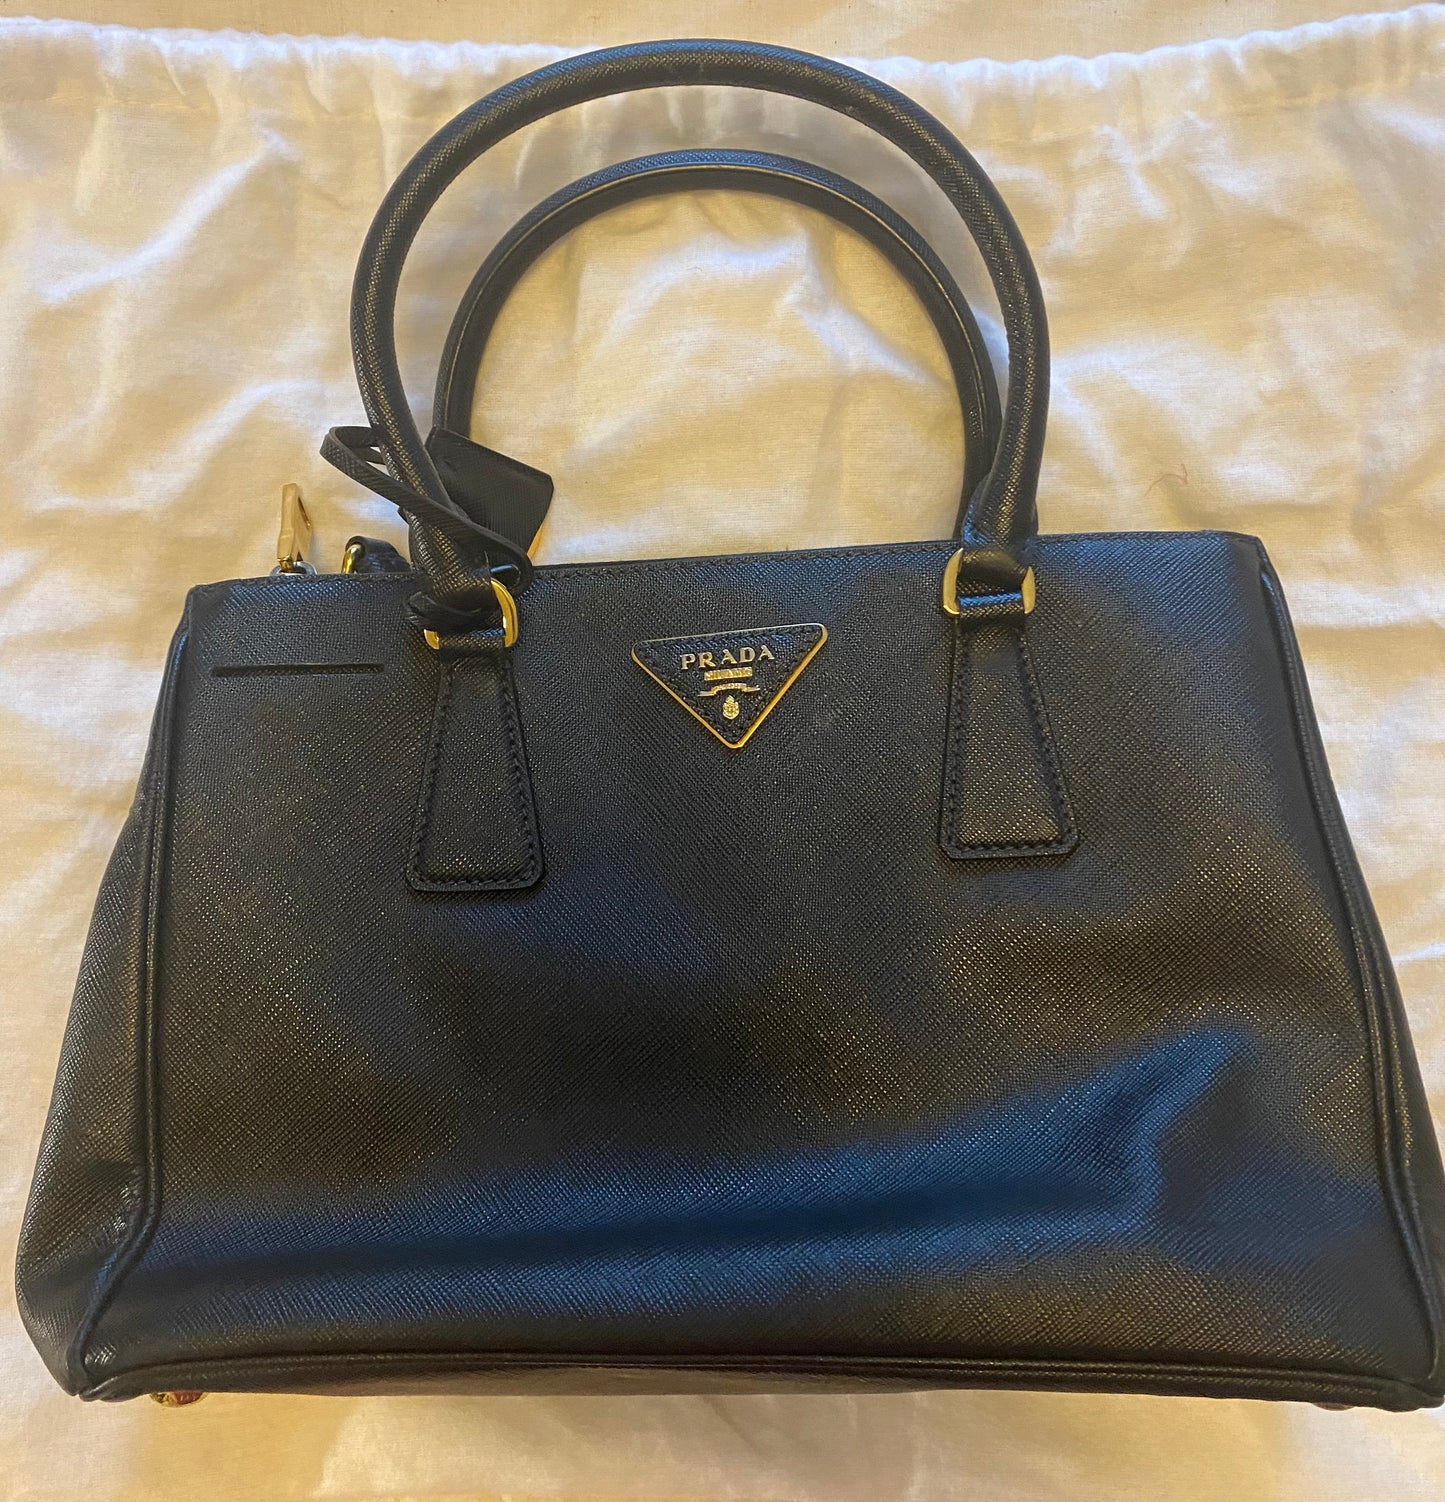 New Bag: Prada Bag